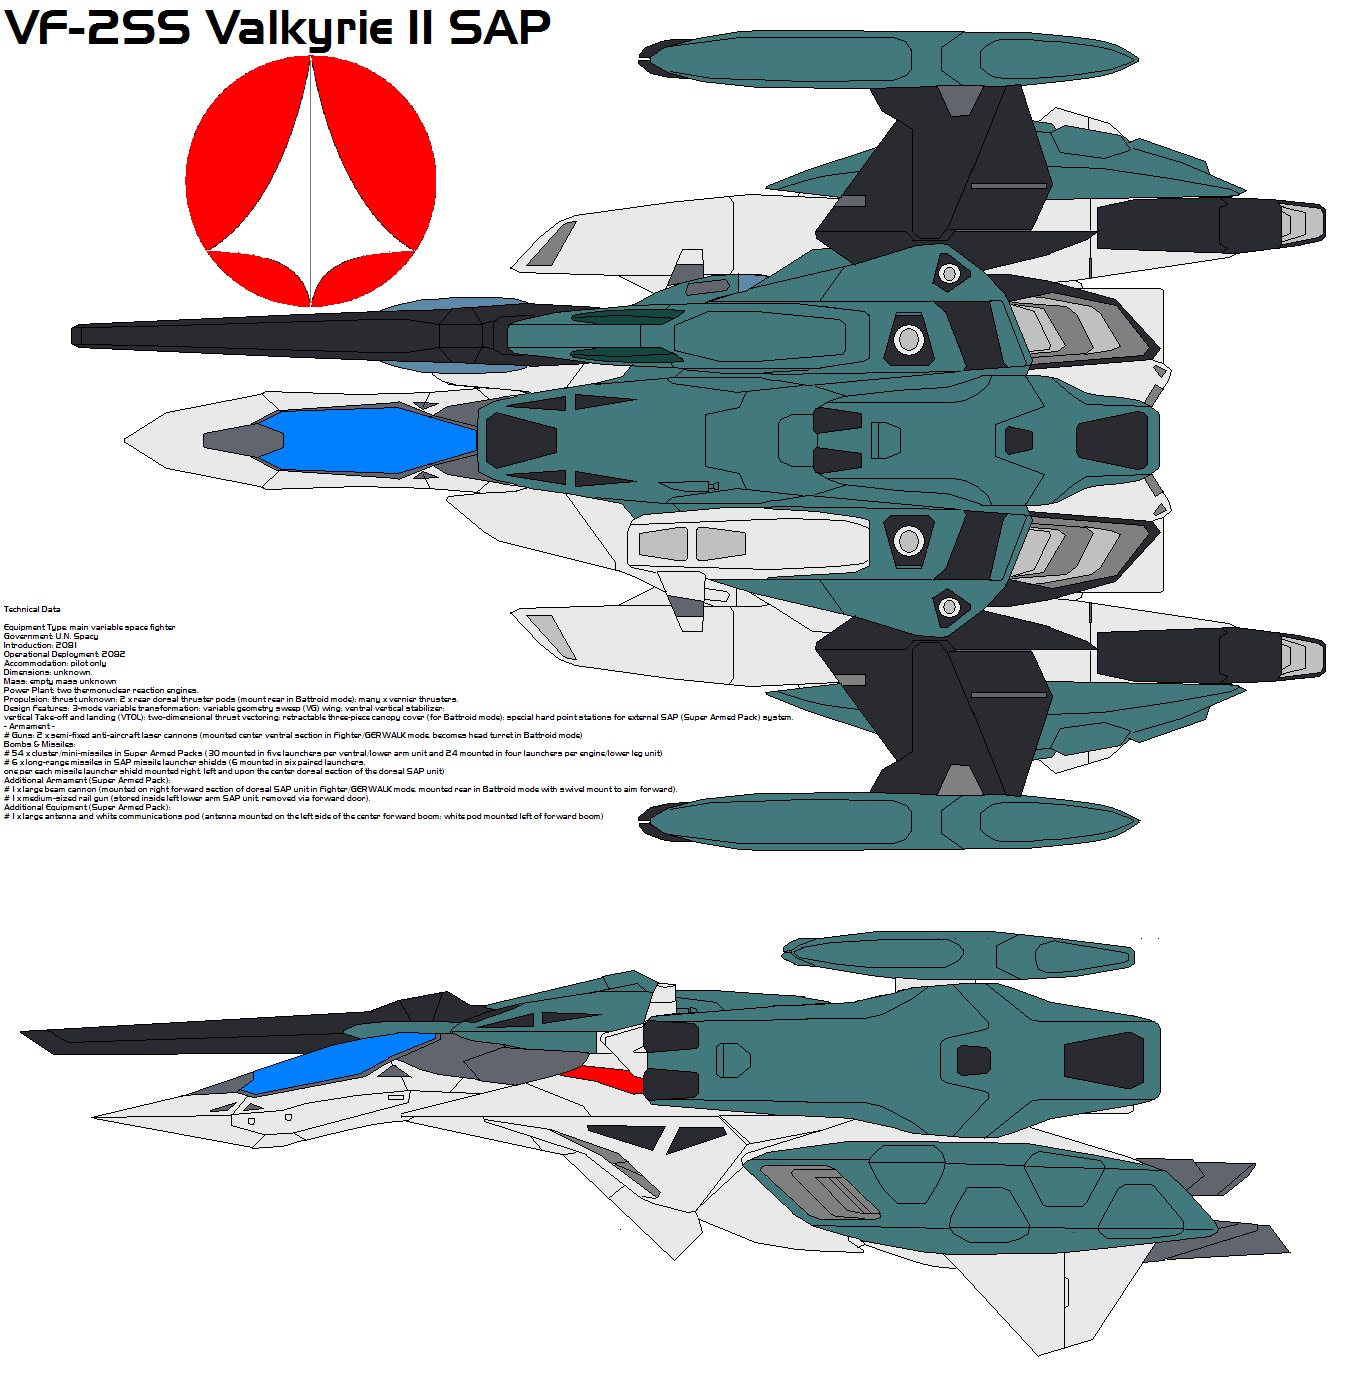 VF-2SS Valkyrie II SAP